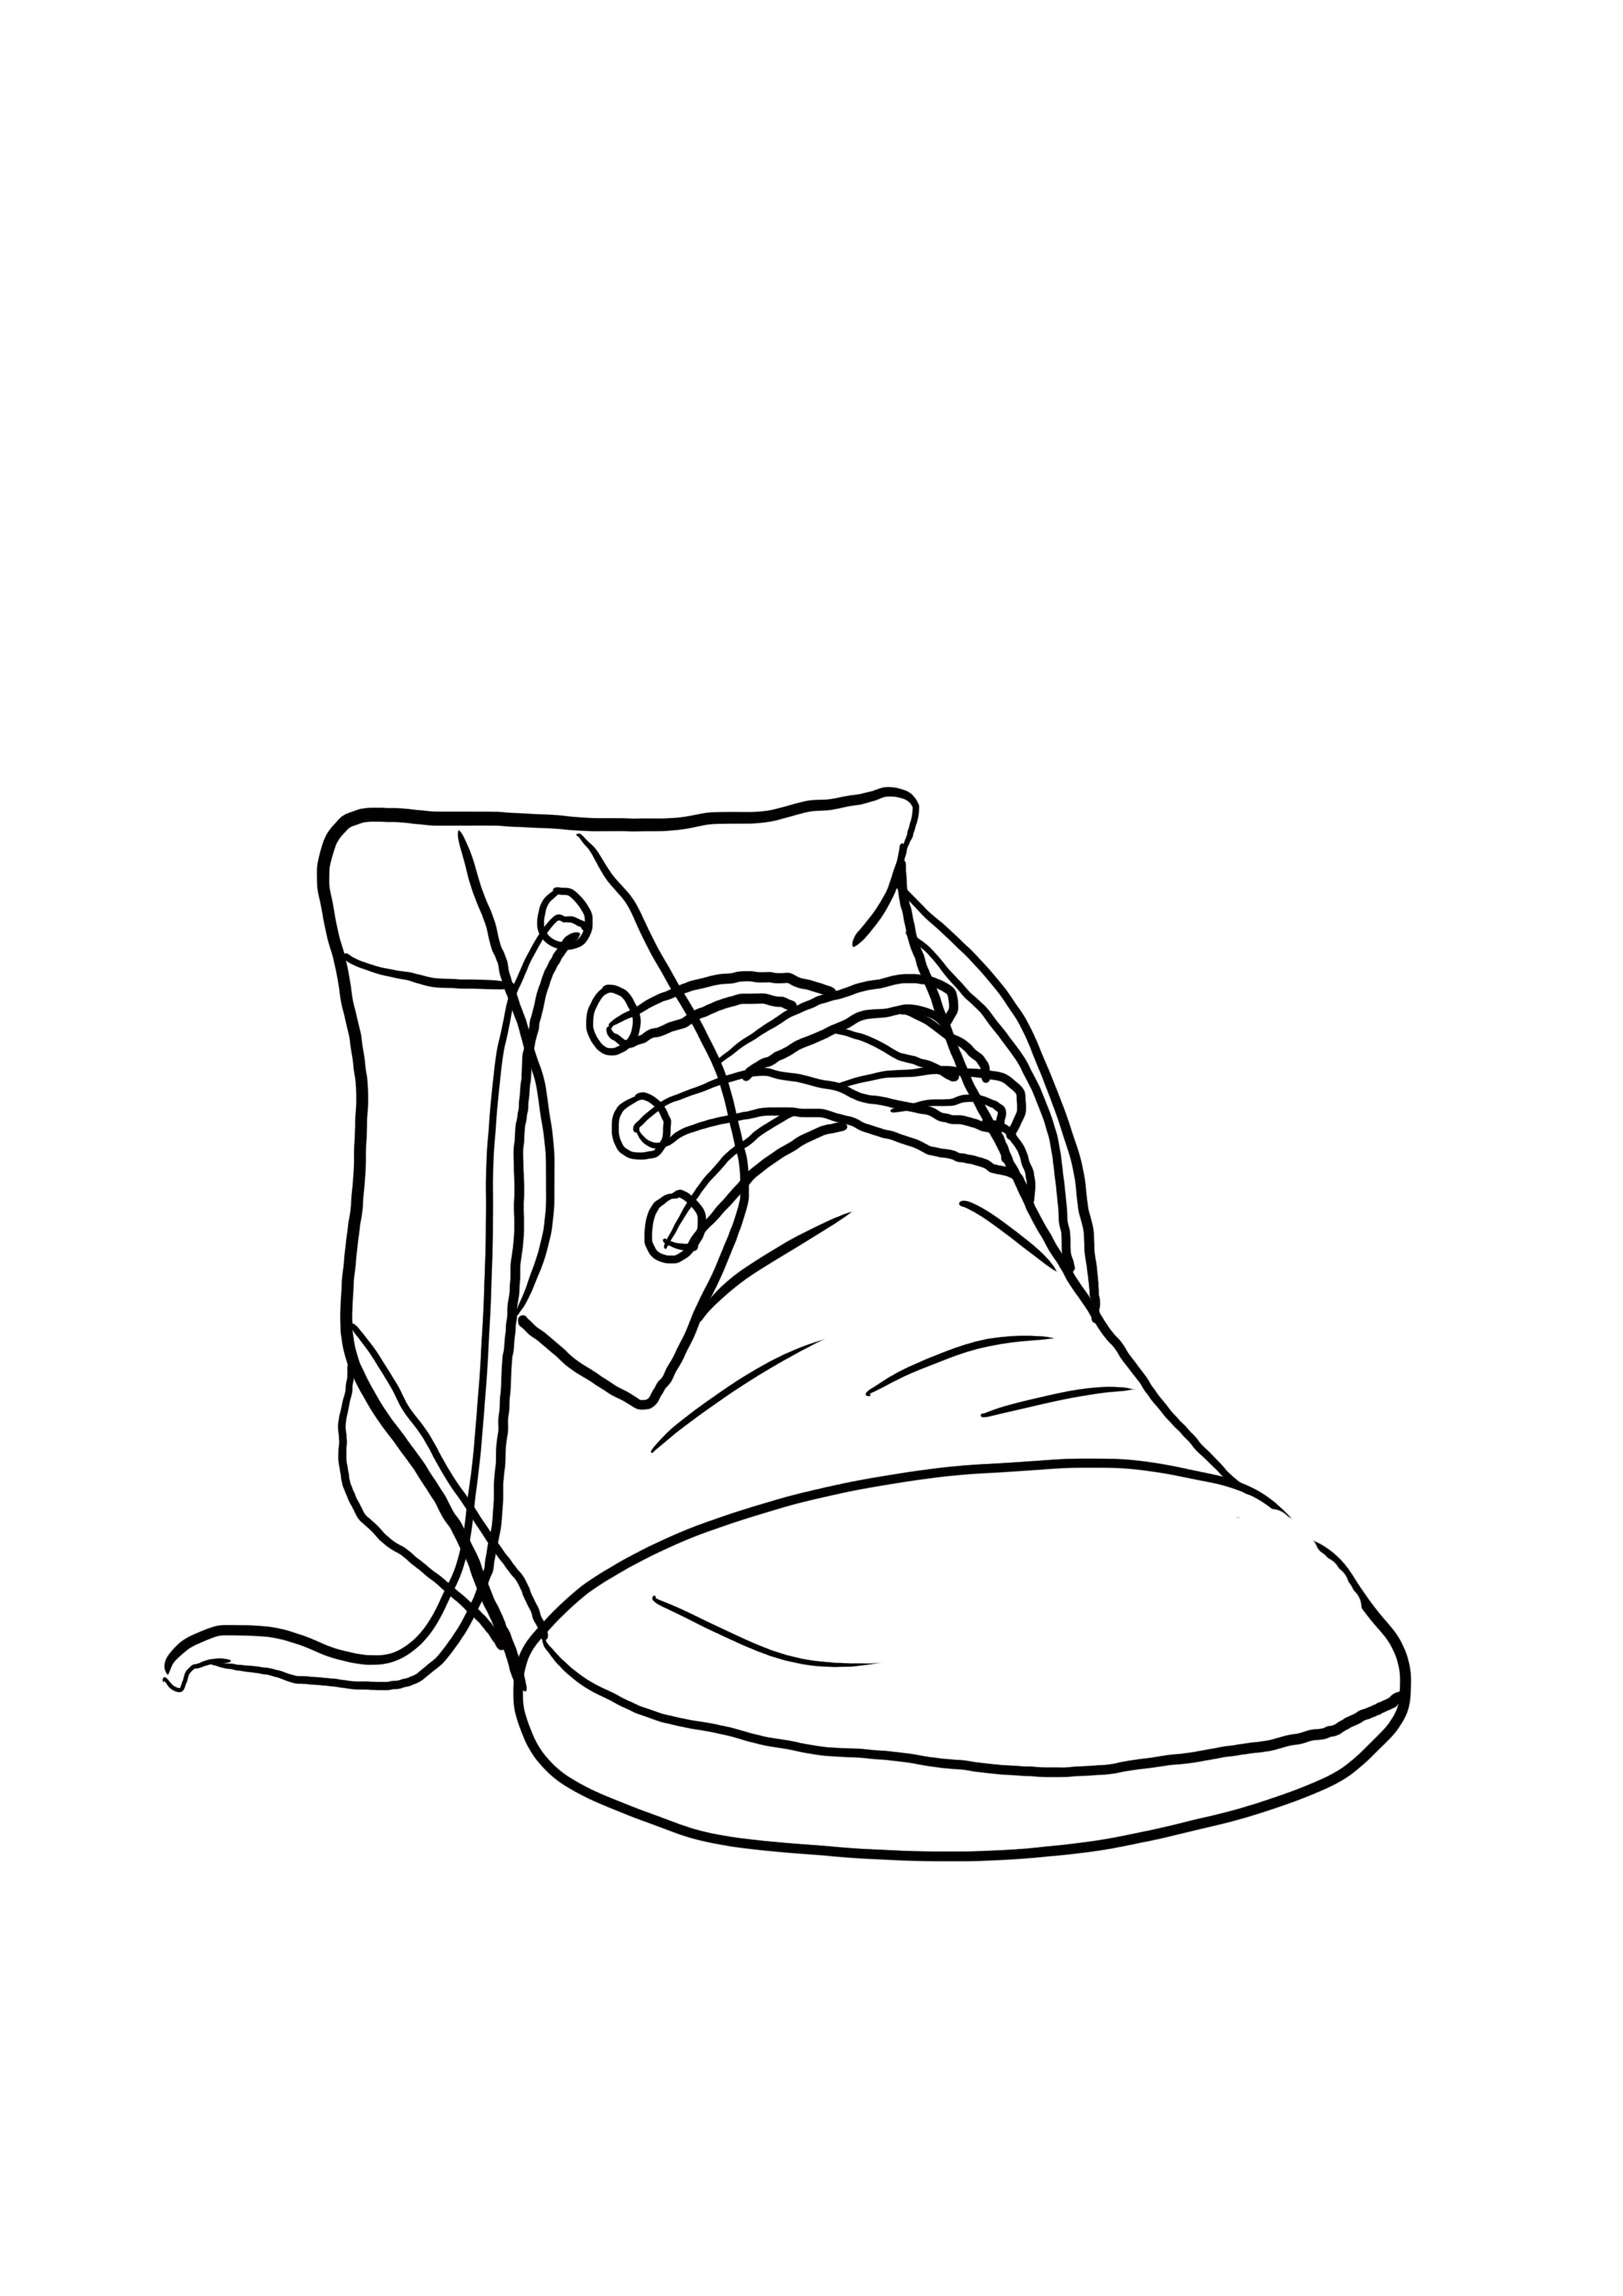 dessin difficile : plis et coutures de la chaussure